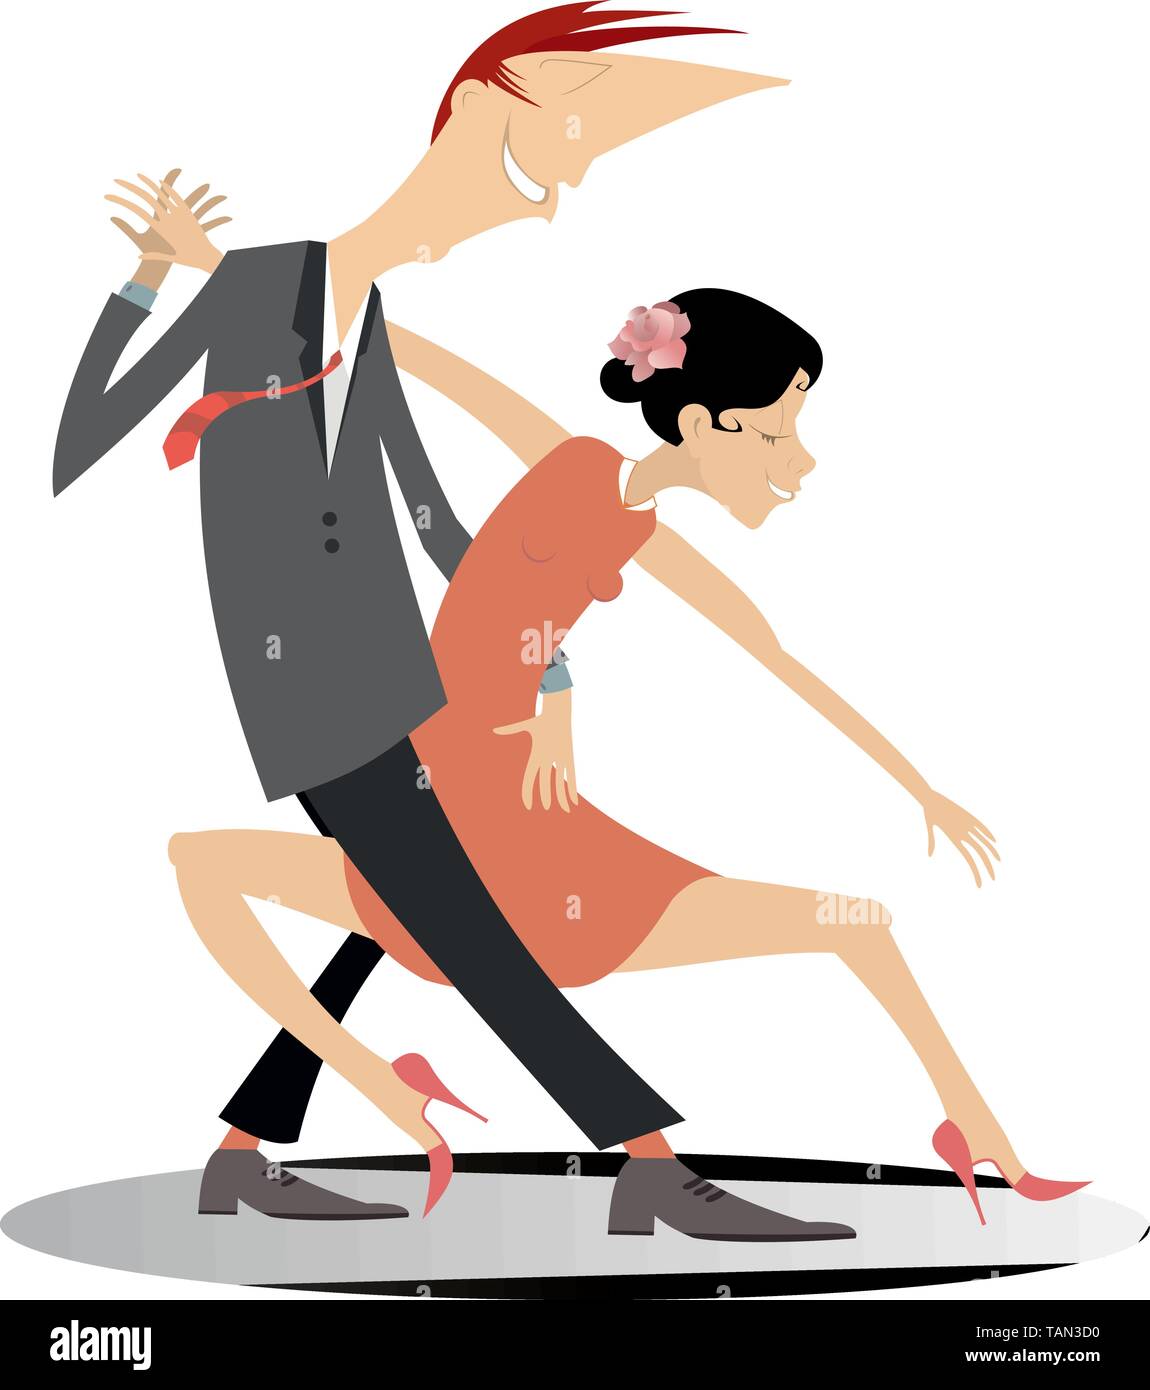 Lustig tanzen junge Paar isoliert. Romantische tanzen Mann und Frau Cartoon Illustration Stock Vektor